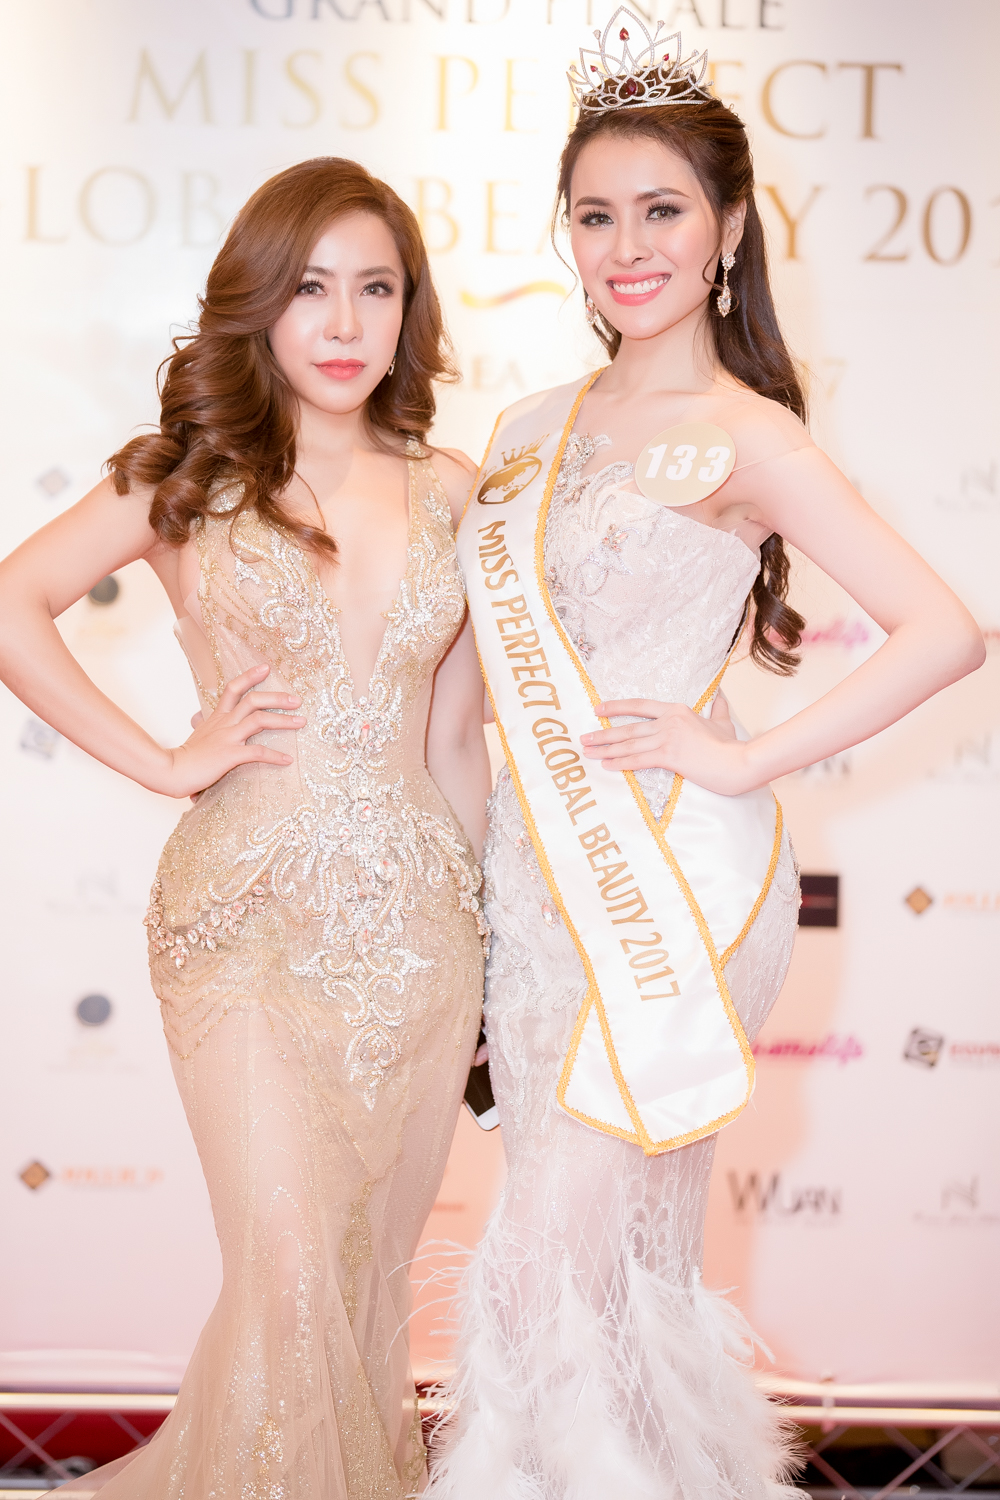 Mai Diệu Linh và Miss Perfect Global Beauty 2017 Thư Dung